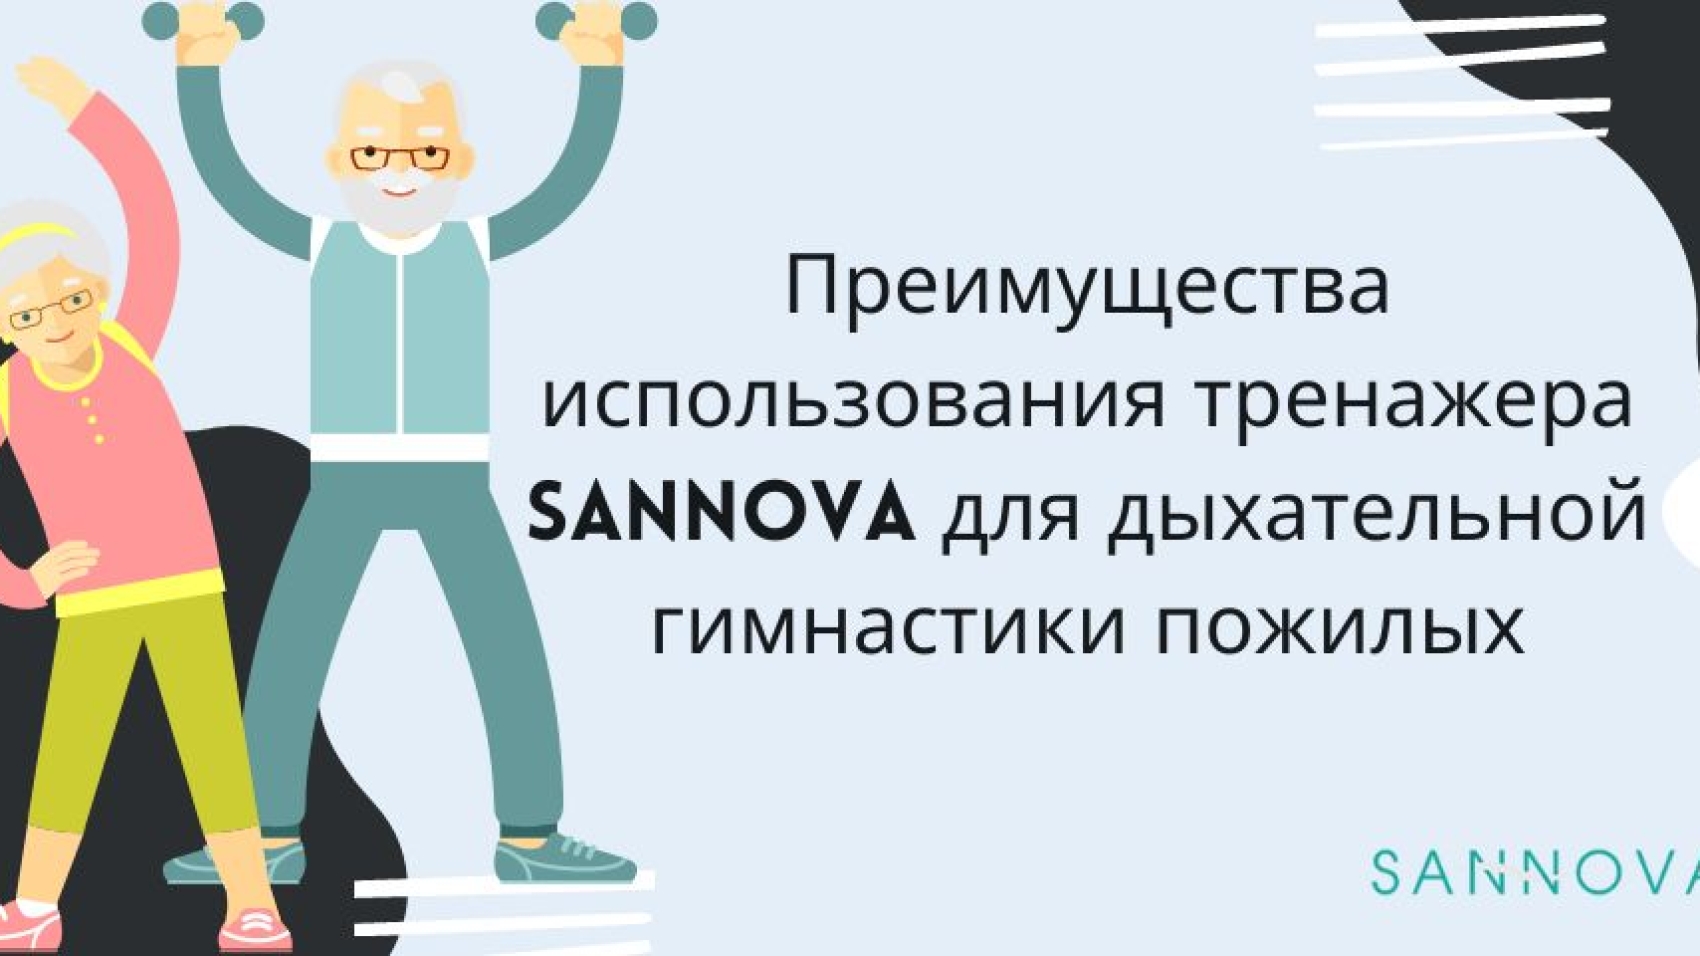 Преимущества использования тренажера Sannova для дыхательной гимнастики пожилых